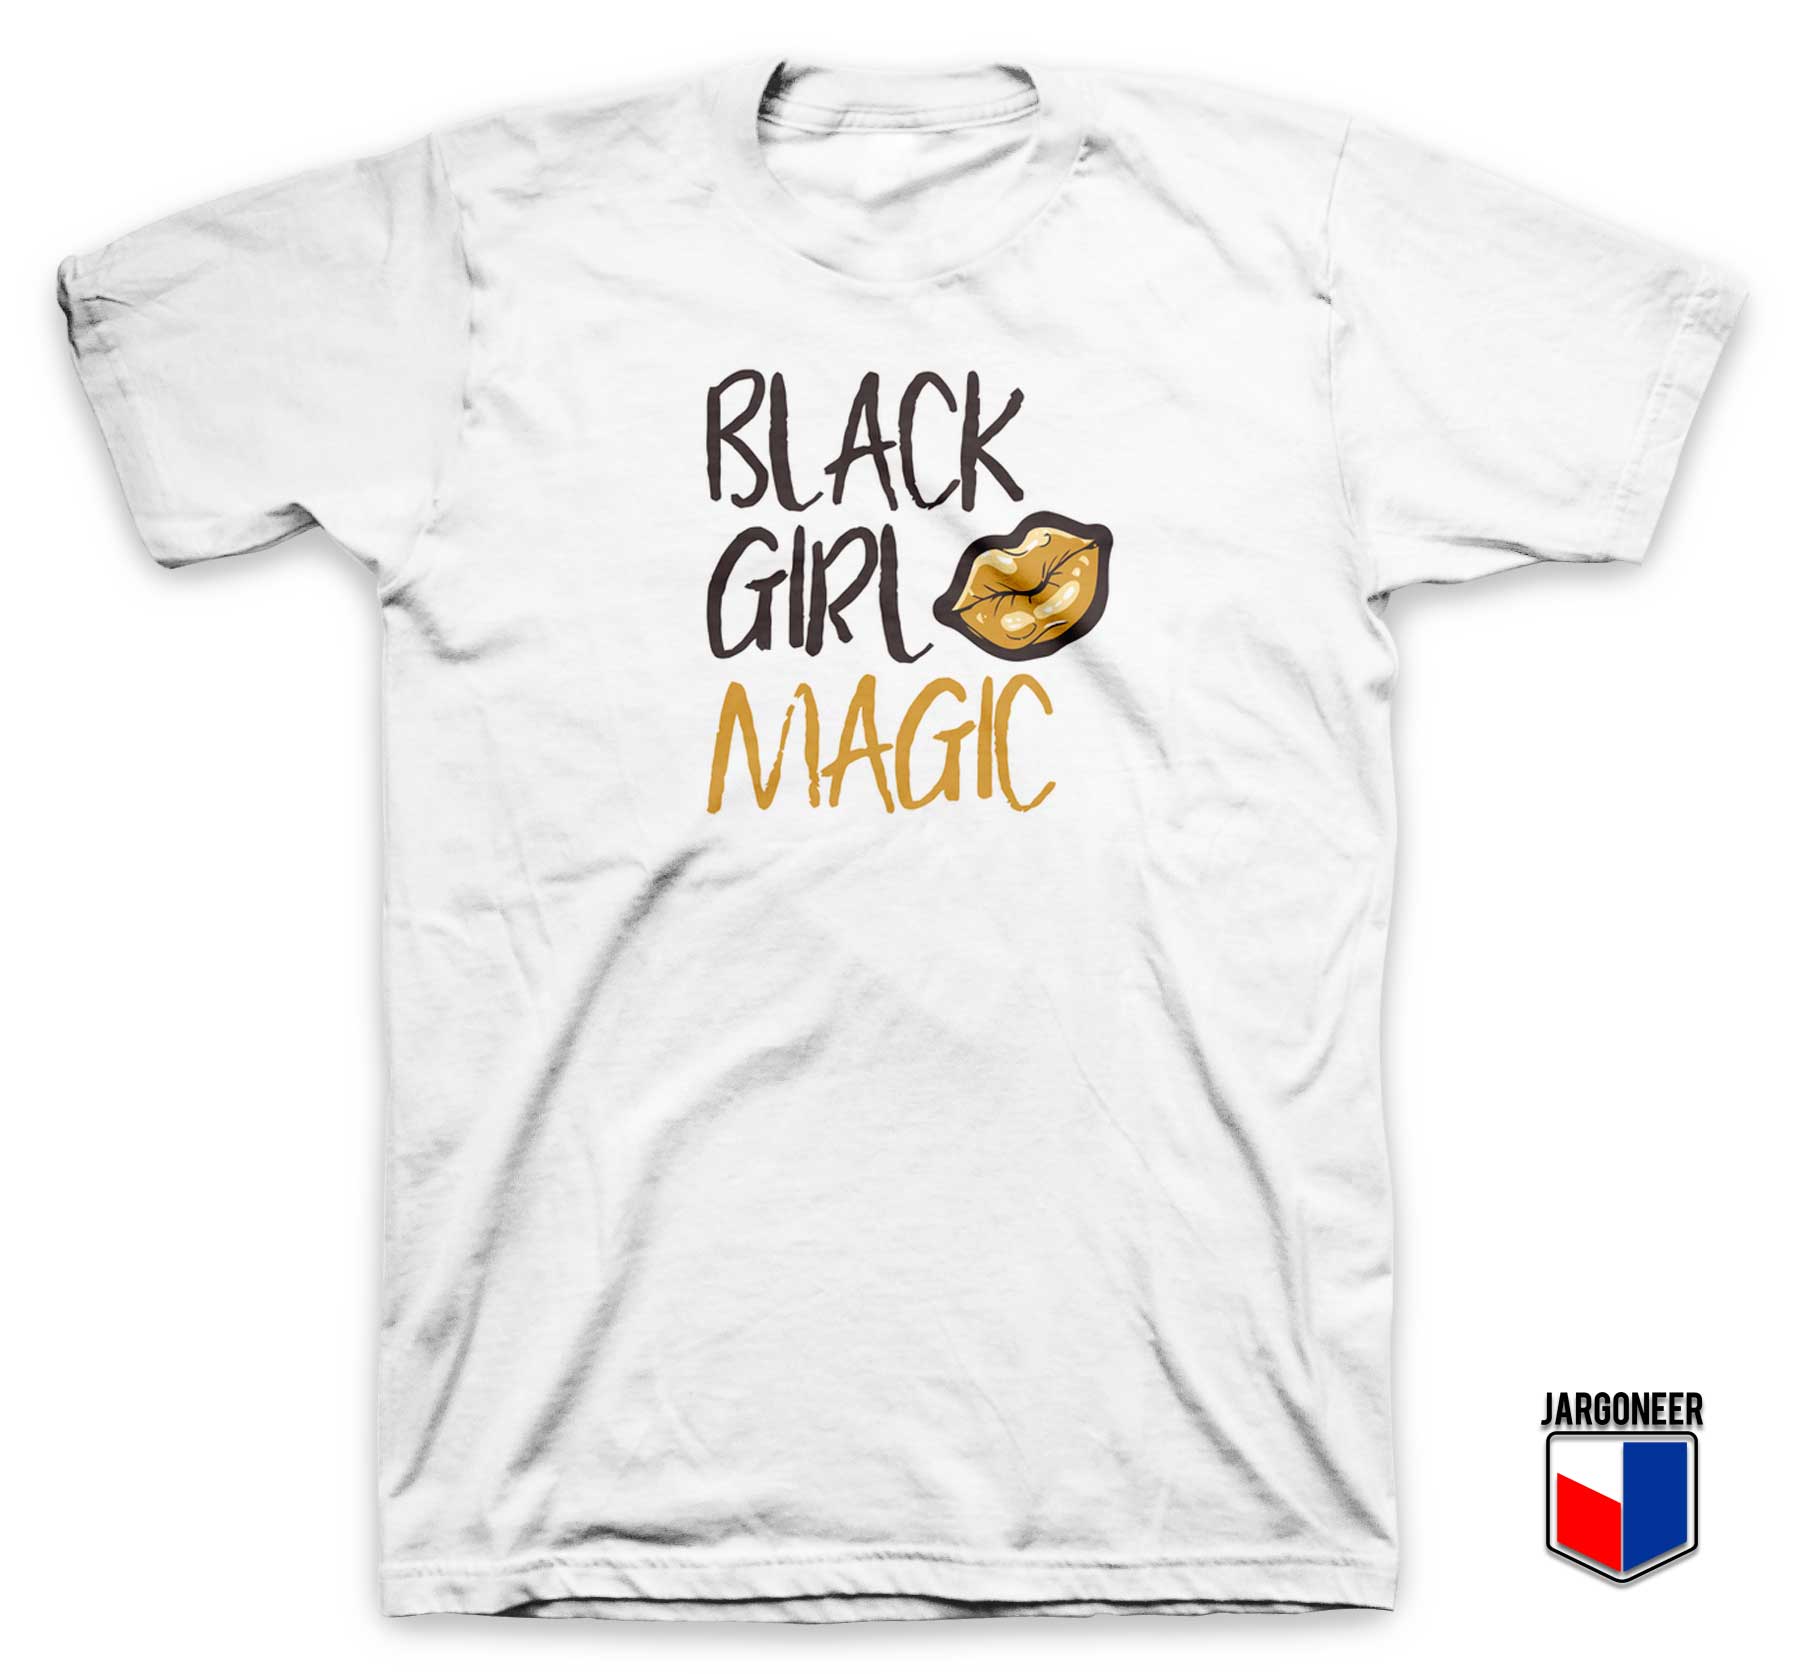 Black Girl Magic T Shirt - Shop Unique Graphic Cool Shirt Designs